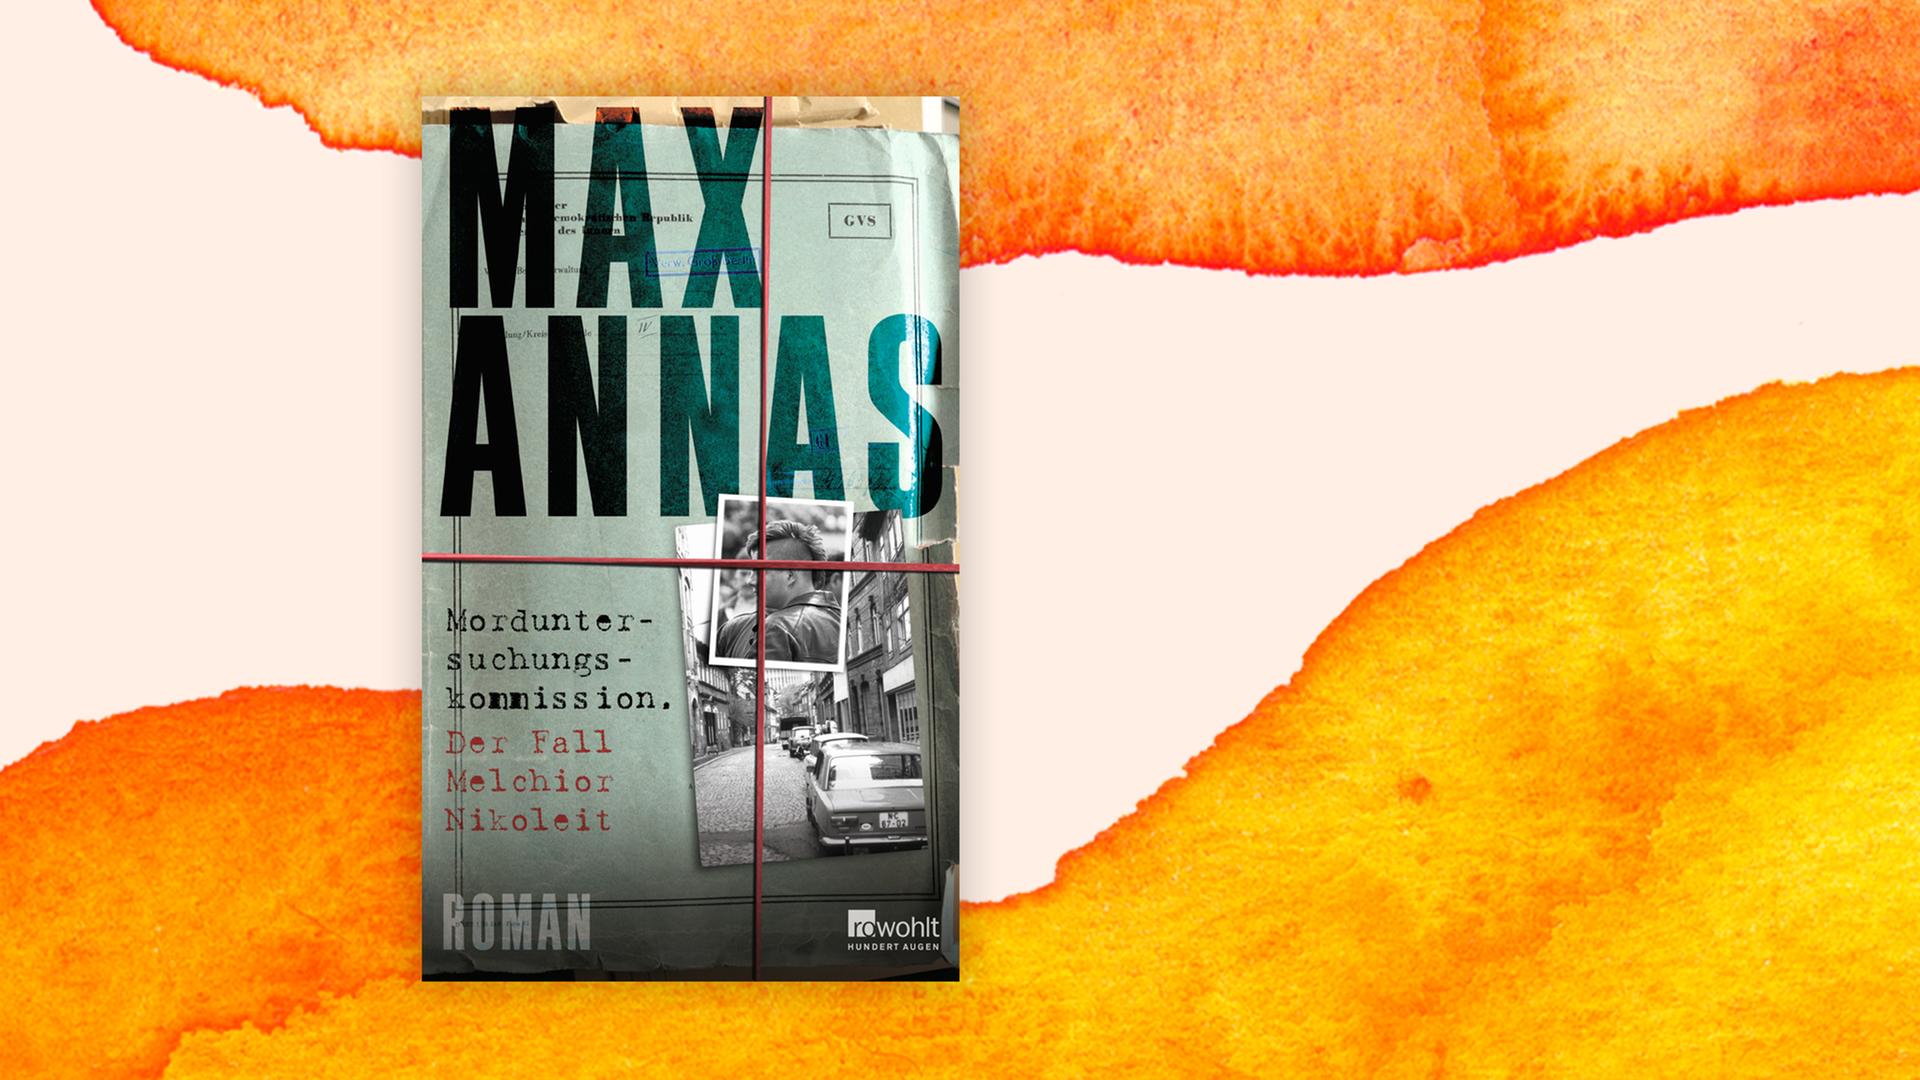 Das Cover von Max Annas' Buch: "Morduntersuchungskommission. Der Fall Melchior Nikoleit" auf orange-weißem Hintergrund. Auf dem Cover sind zwei Fotos in verschiedenen Größen zu sehen, Autor und Titel sind in typischer Schreibmaschinenschrift gedruckt. Ein Gummi scheint horizontal und vertikal über das Ensemble gespannt zu sein.